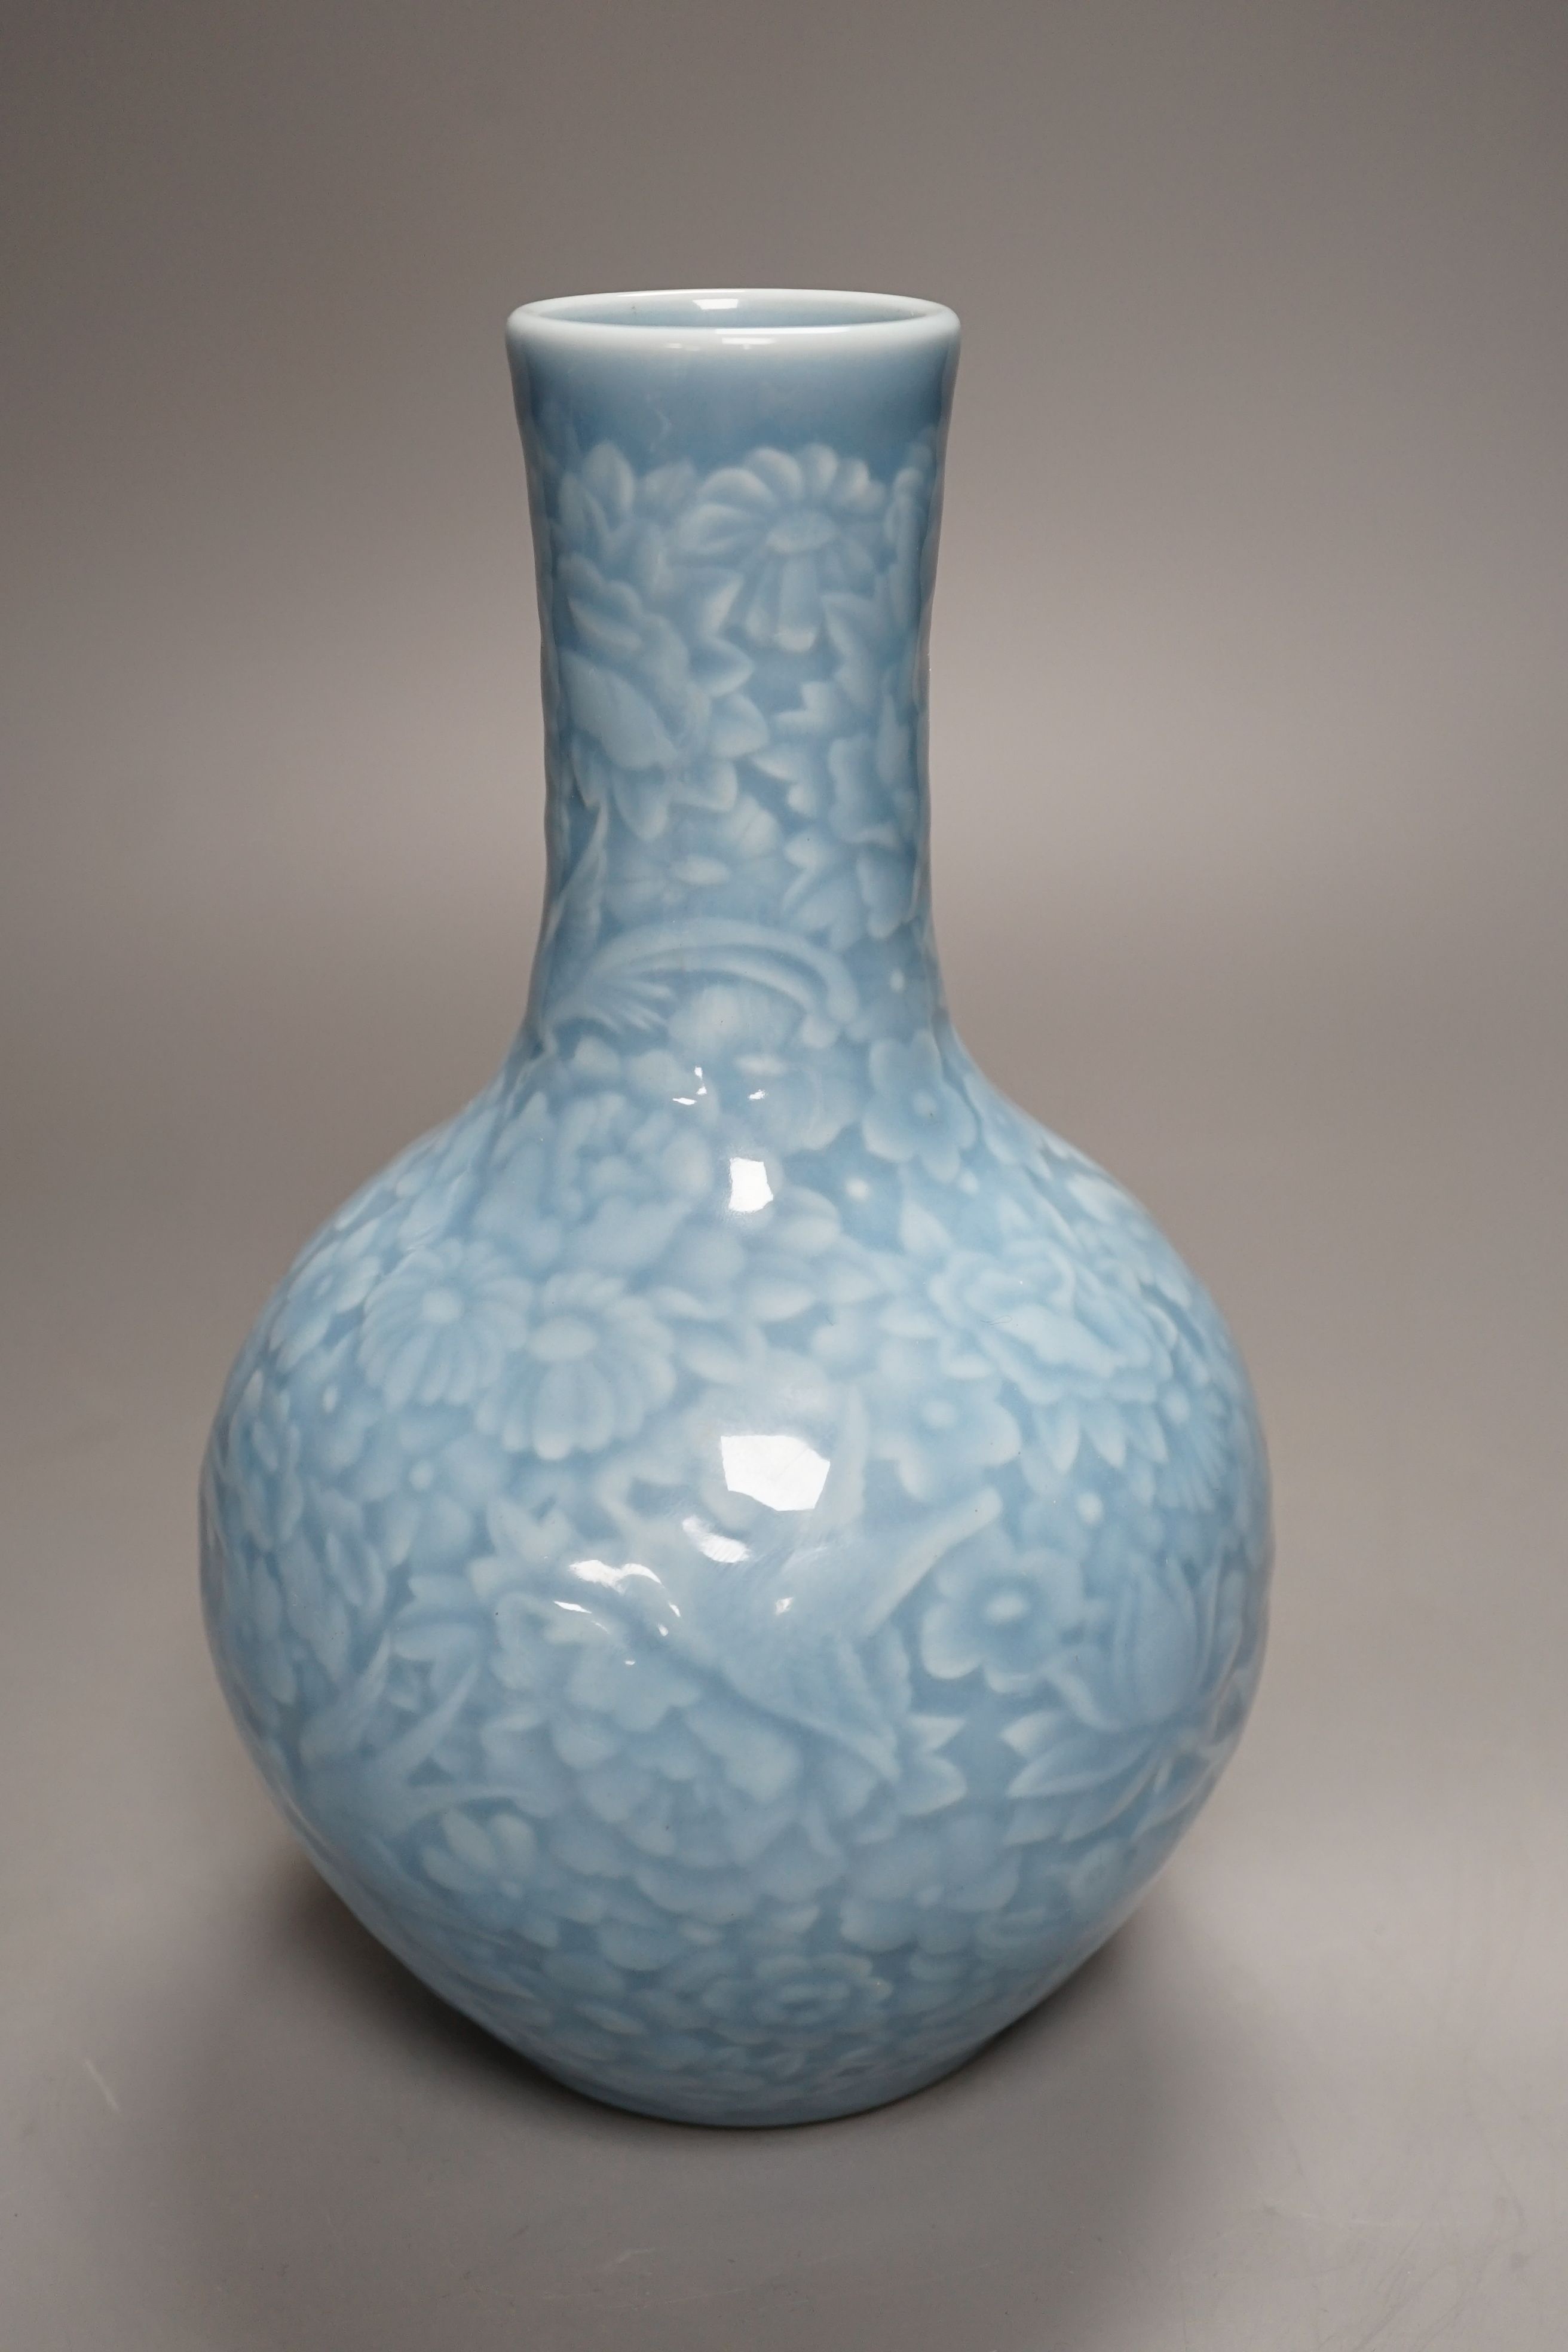 A Chinese blue-glazed moulded bottle vase - 23cm high - Image 2 of 4